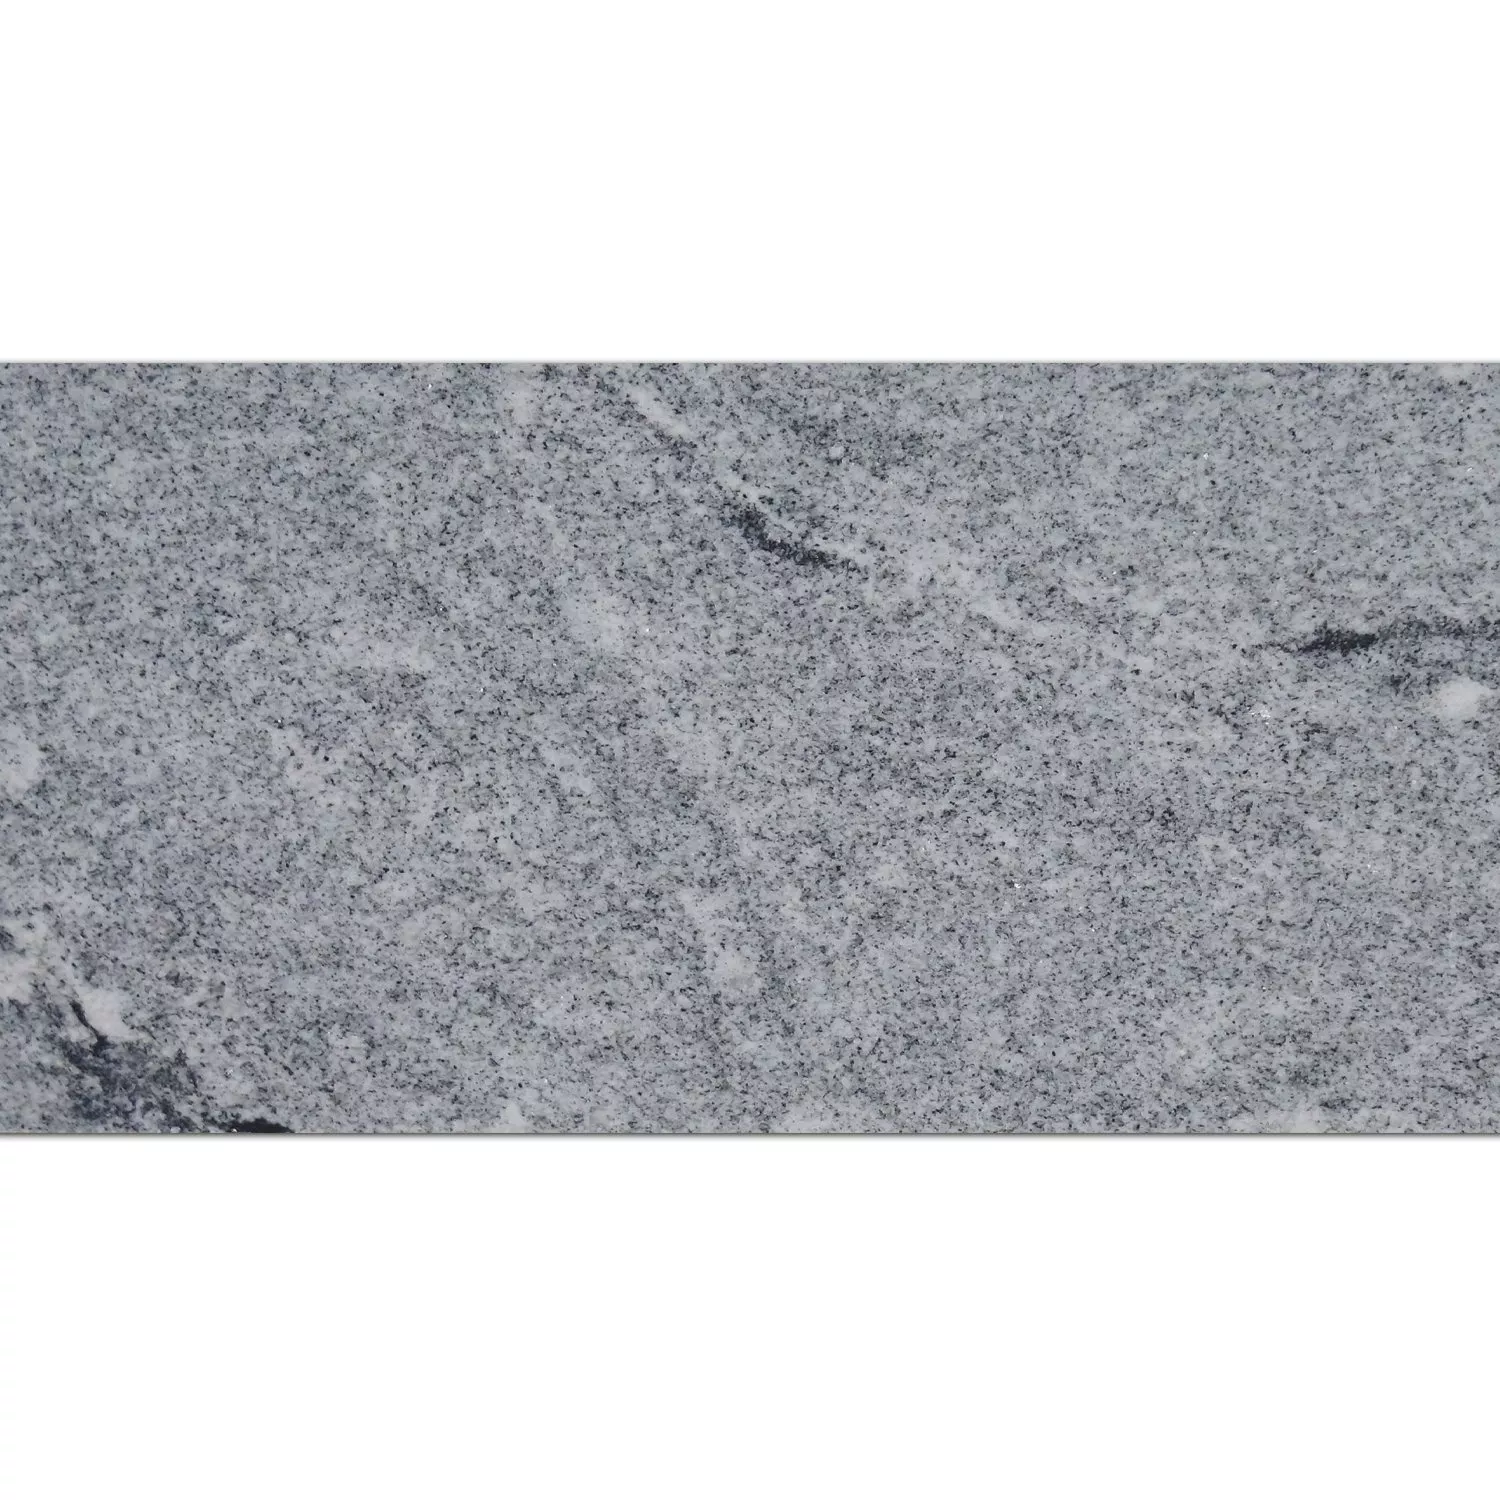 Carreaux Pierre Naturelle Granit Viscont White Poli Brillant 30,5x61cm